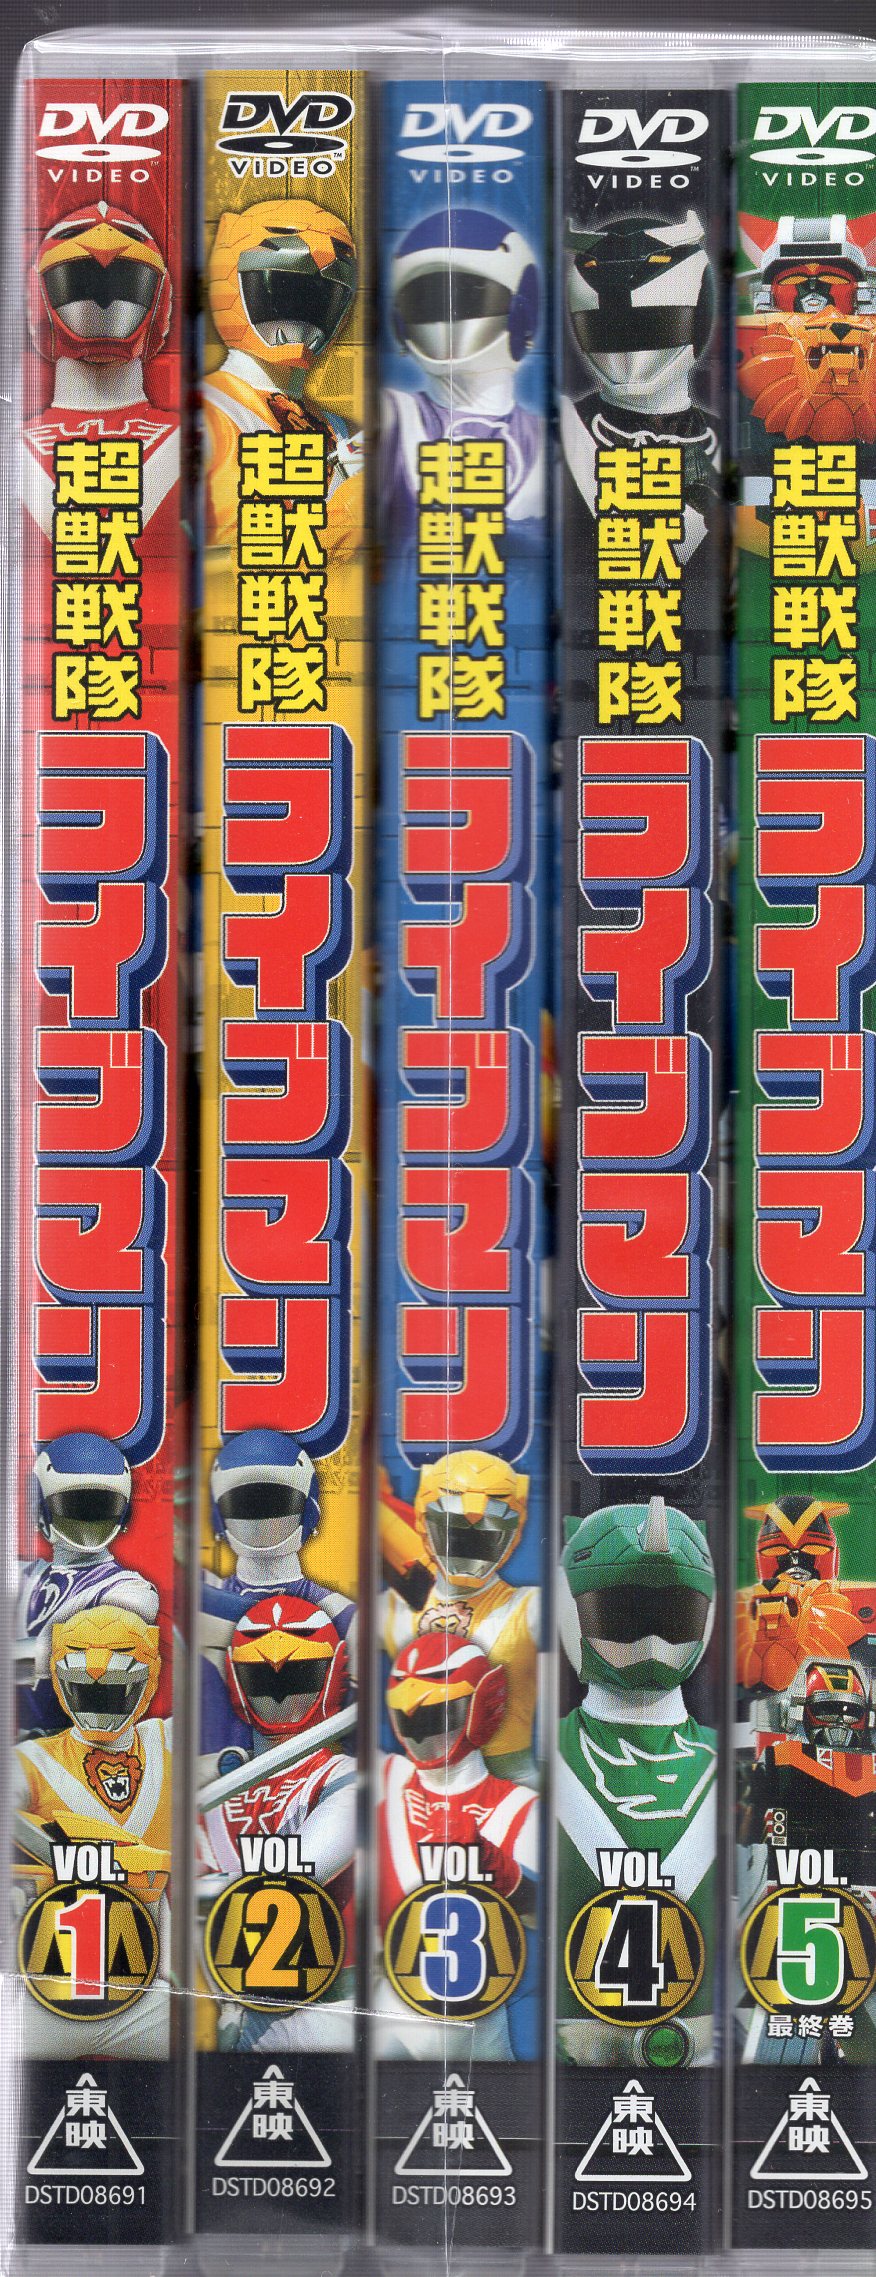 東映 特撮DVD スーパー戦隊 超獣戦隊ライブマン 全5巻セット